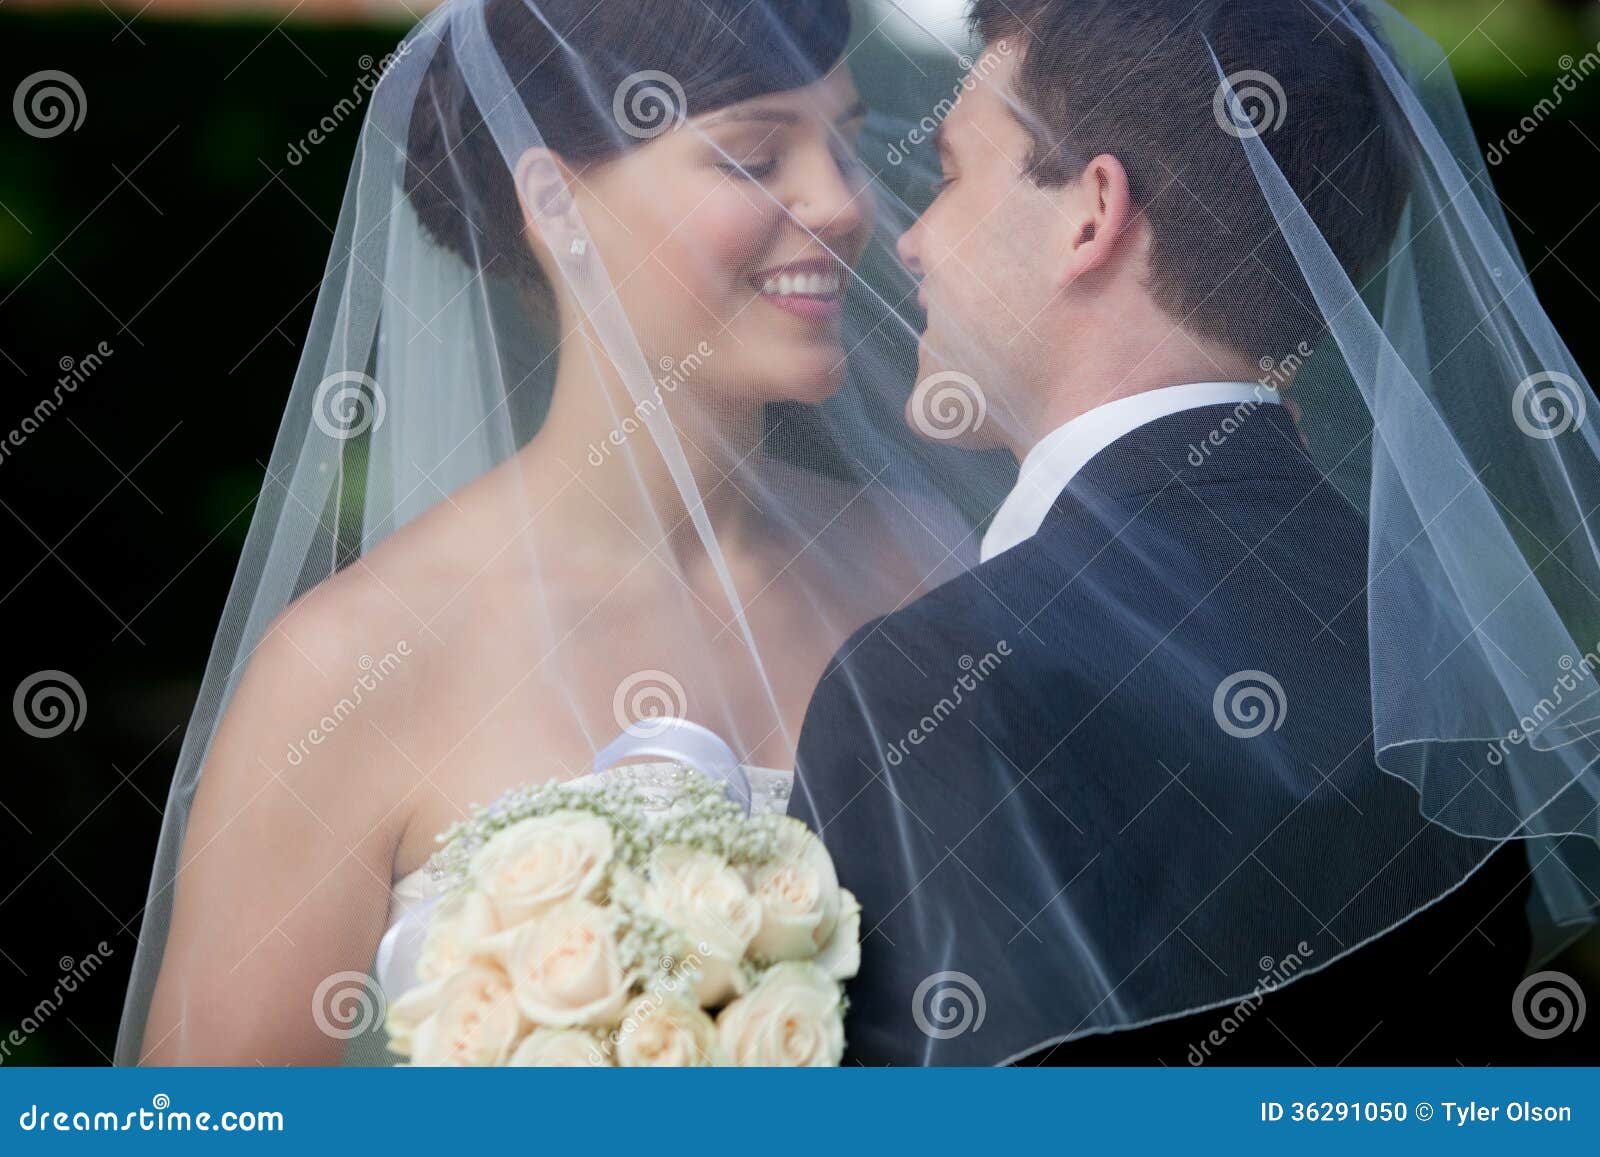 亲吻在喷水喷泉前面的新娘和新郎 库存照片. 图片 包括有 爱好健美者, 白天, 成人, 新郎, 言情, 投反对票 - 57528430